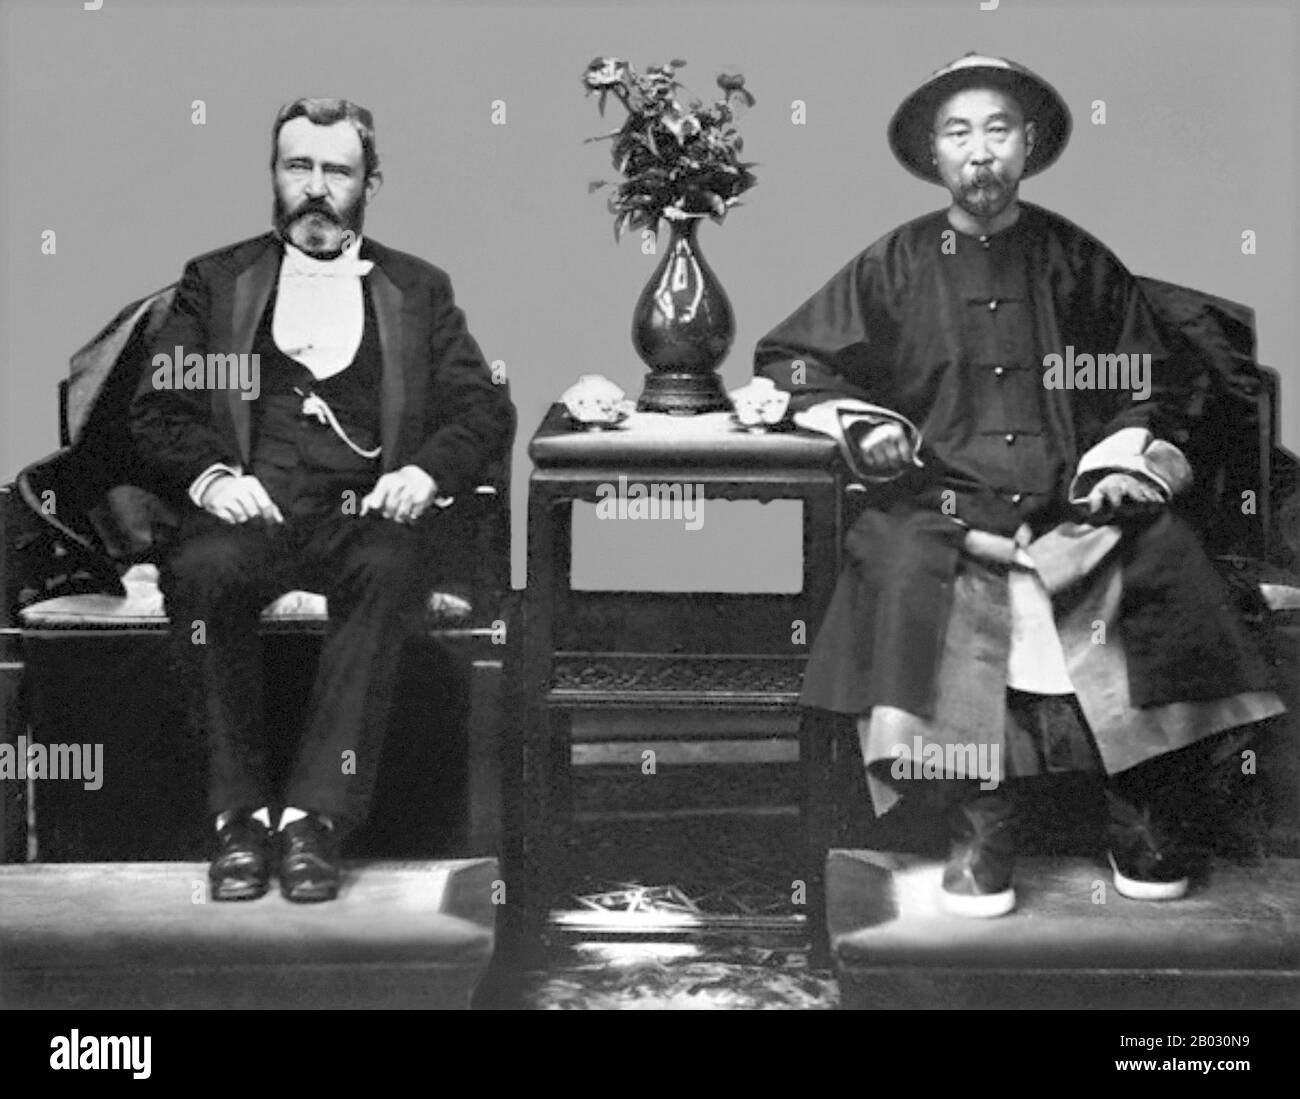 Ulysses S. Grant (geborene Hiram Ulysses Grant; 27. April 1822 - 23. Juli 1885) war der 18. Präsident der Vereinigten Staaten (1869-77). Li Hongzhang, (auch als Li Hung-chang romanisiert) (15. Februar 1823 - 7. November 1901) war ein chinesischer Politiker, General und Diplomat der späten Qing-Dynastie. Stockfoto